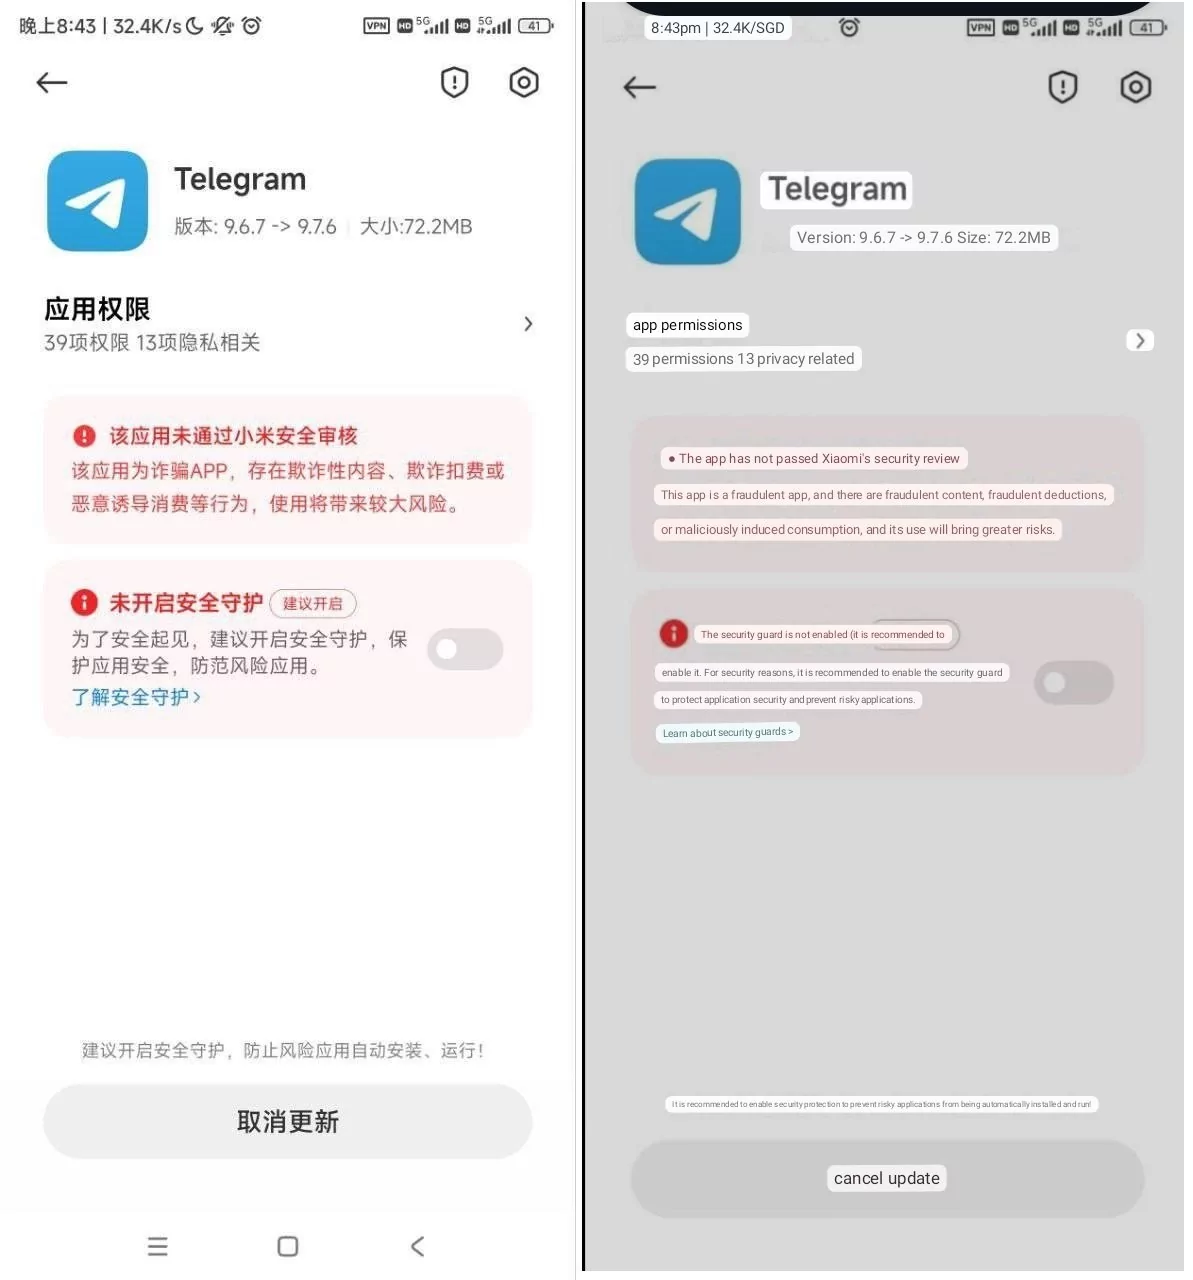 MIUI начала блокировать Telegram, но не везде. Причина странная